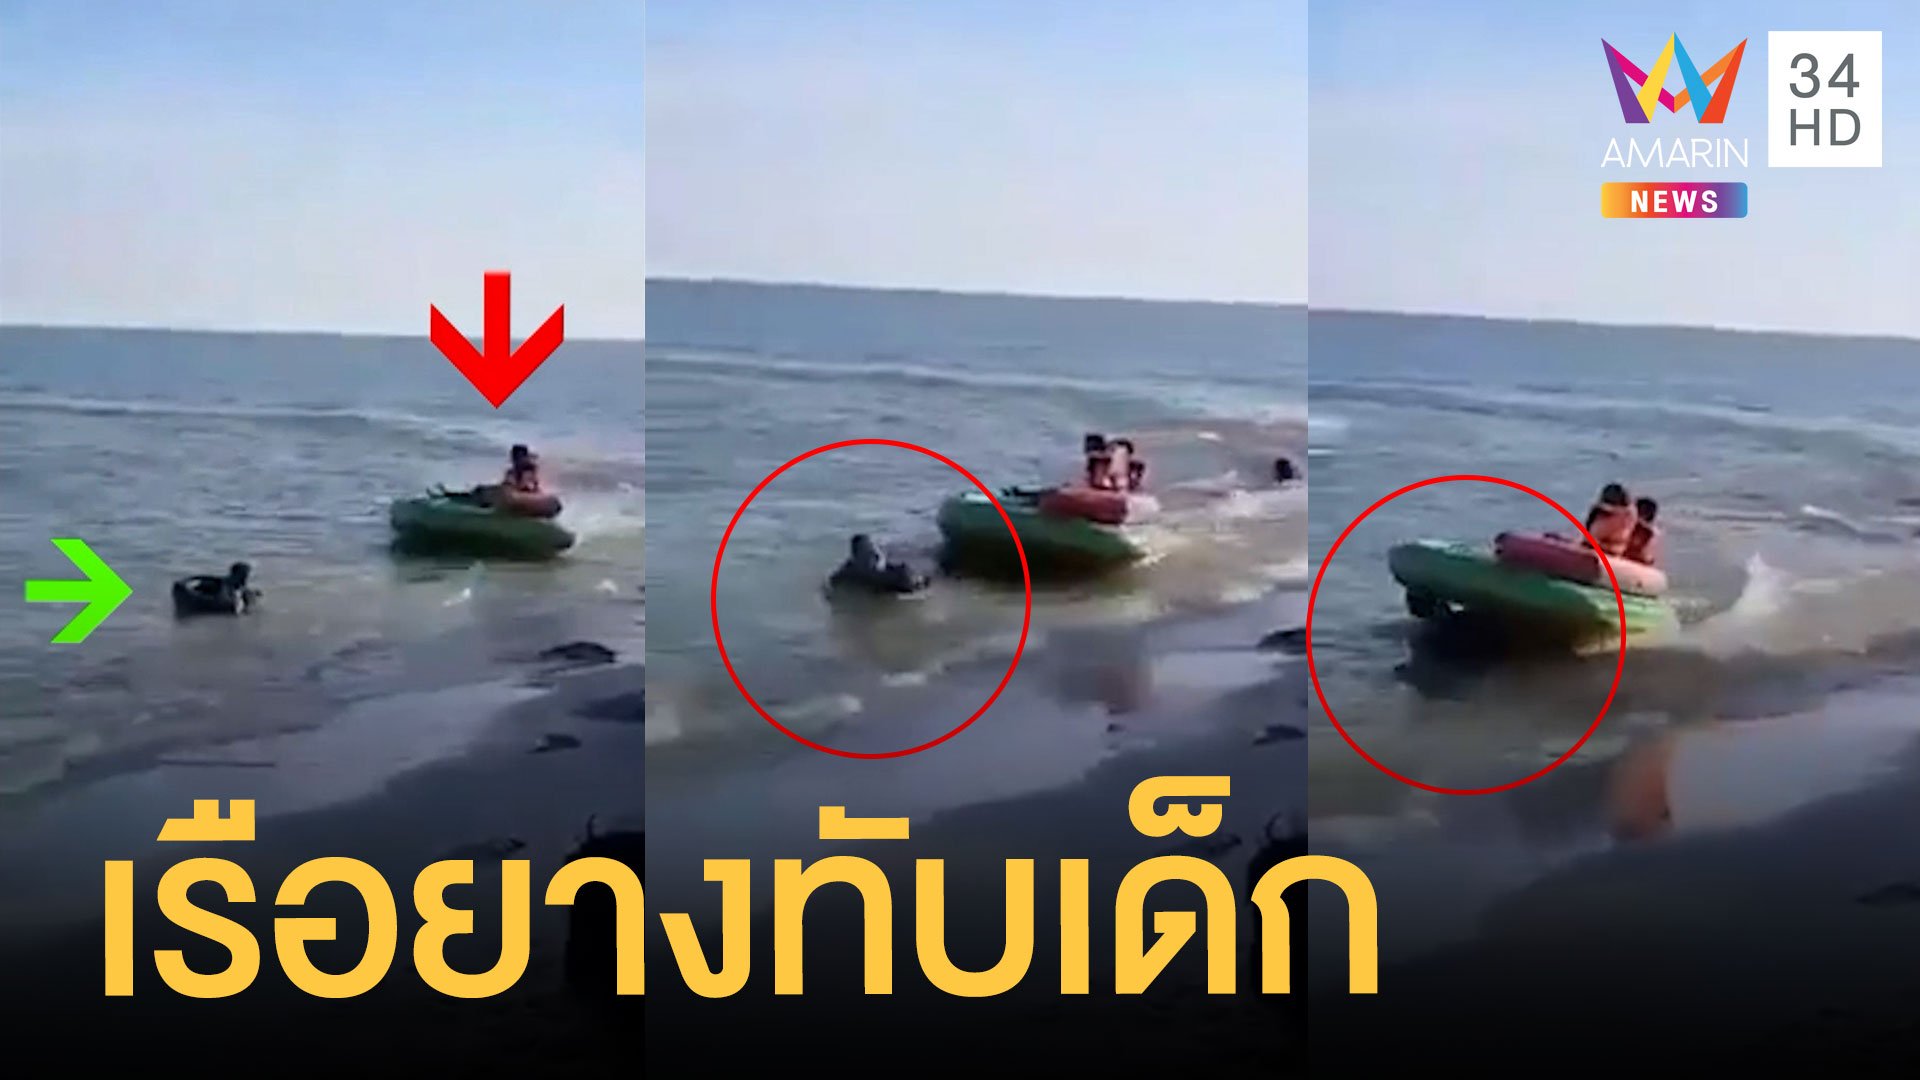 เจ็ทสกีลากเรือยางเหวี่ยงทับเด็กเล่นน้ำทะเล | ข่าวอรุณอมรินทร์ | 25 พ.ย. 63 | AMARIN TVHD34